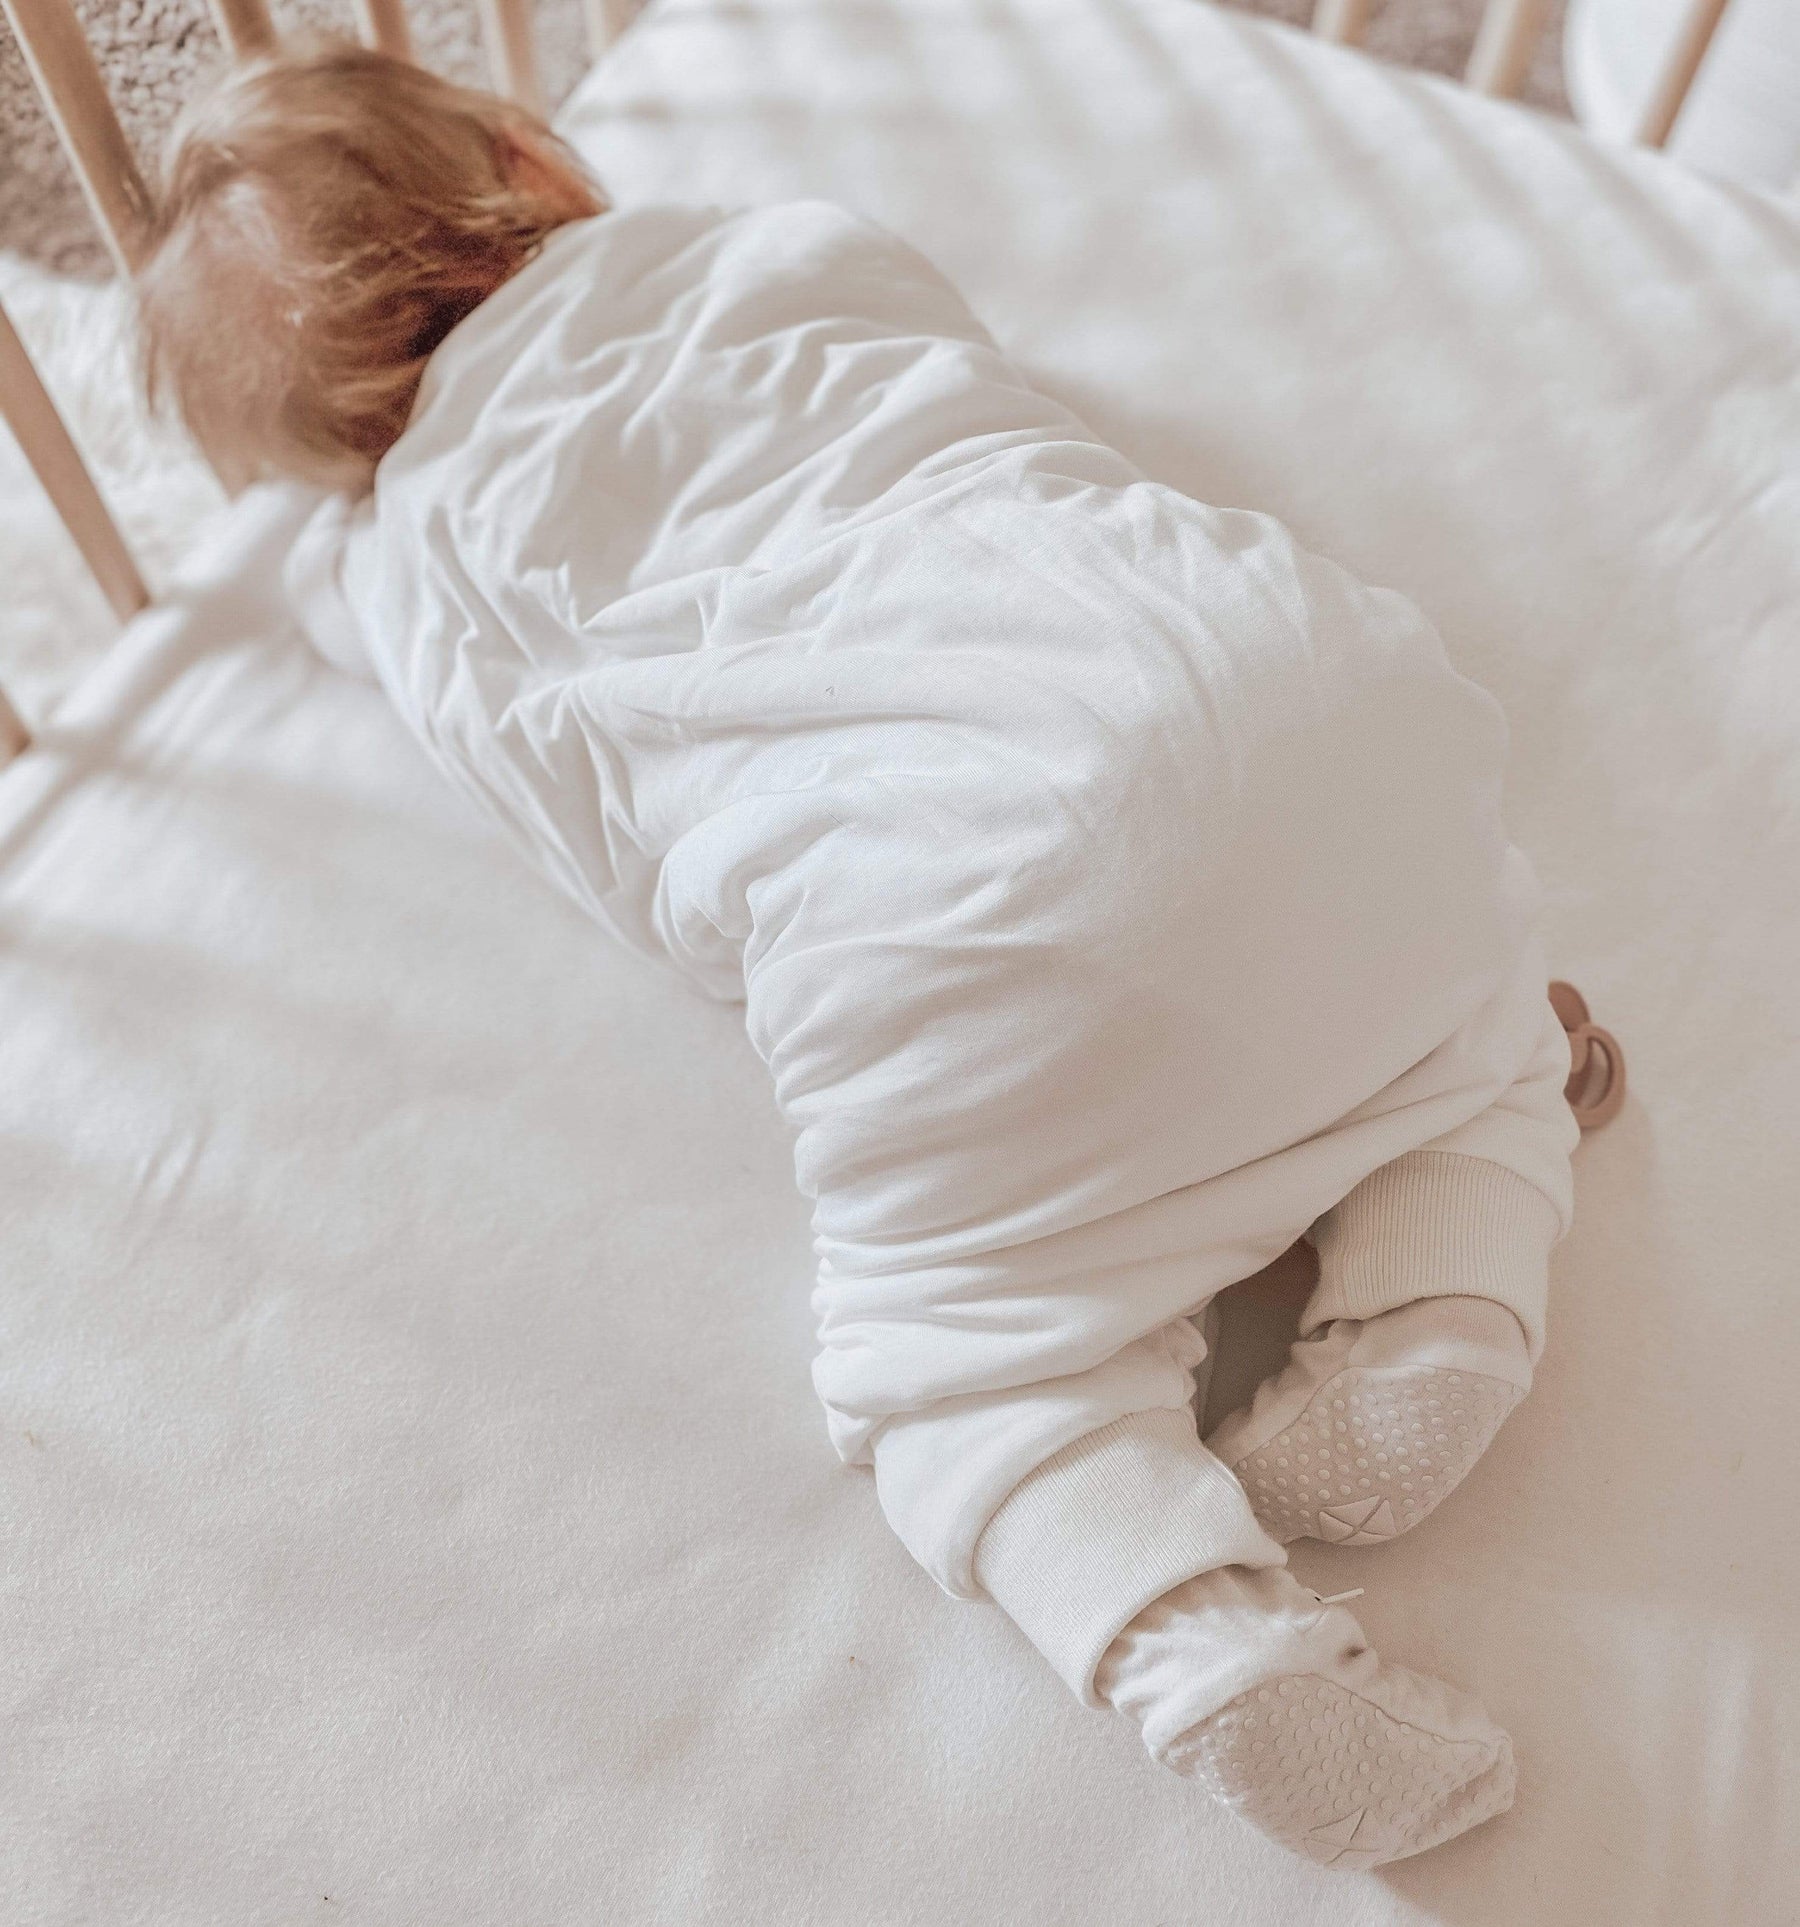 Baby wearing Kyte Baby Sleep Bag Walker in Cloud 1.0 over footie pajamas